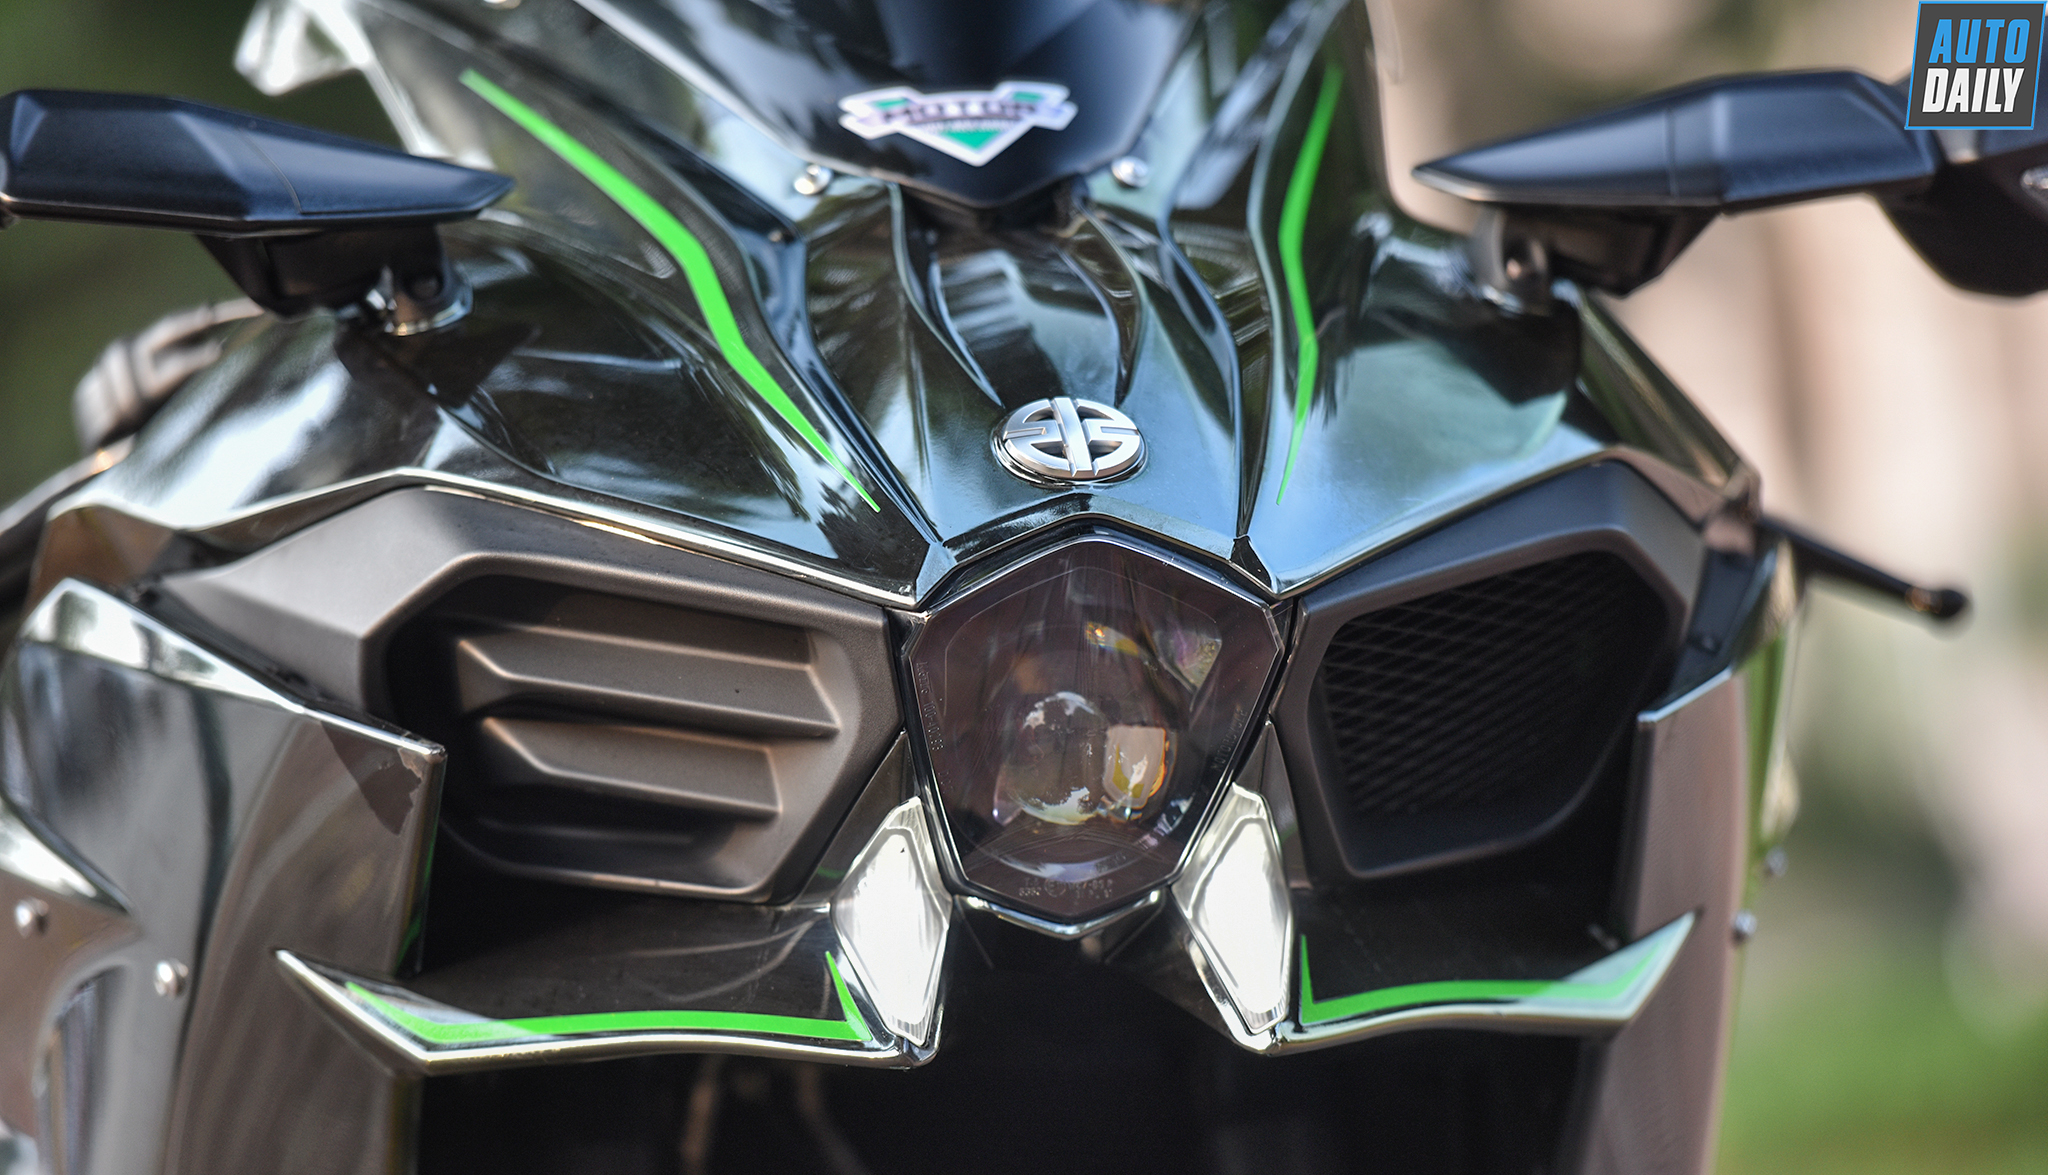 Siêu môtô Kawasaki Ninja H2 siêu lướt giá 850 triệu tại Hà Nội h1.jpg